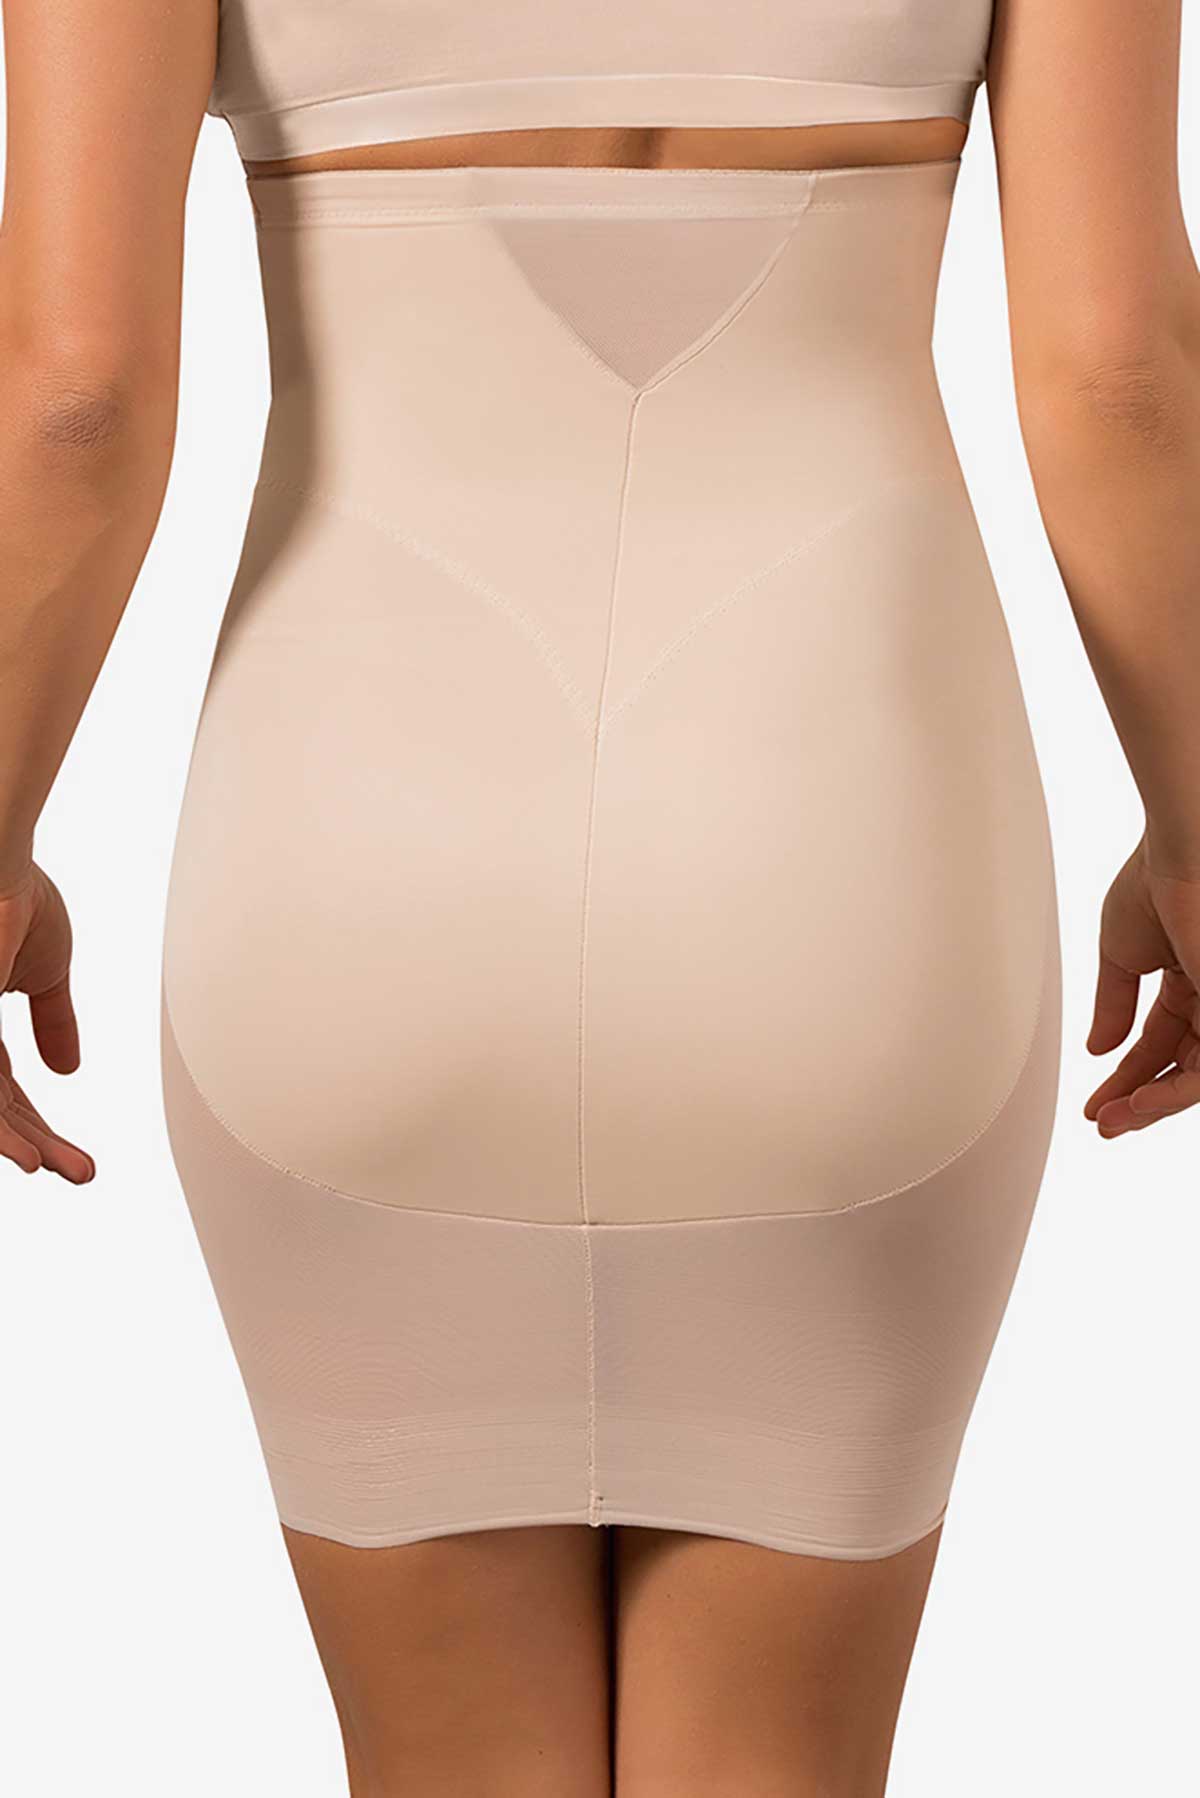 Sleek Essentials High Waist Shaper Slip Skirt by Miraclesuit